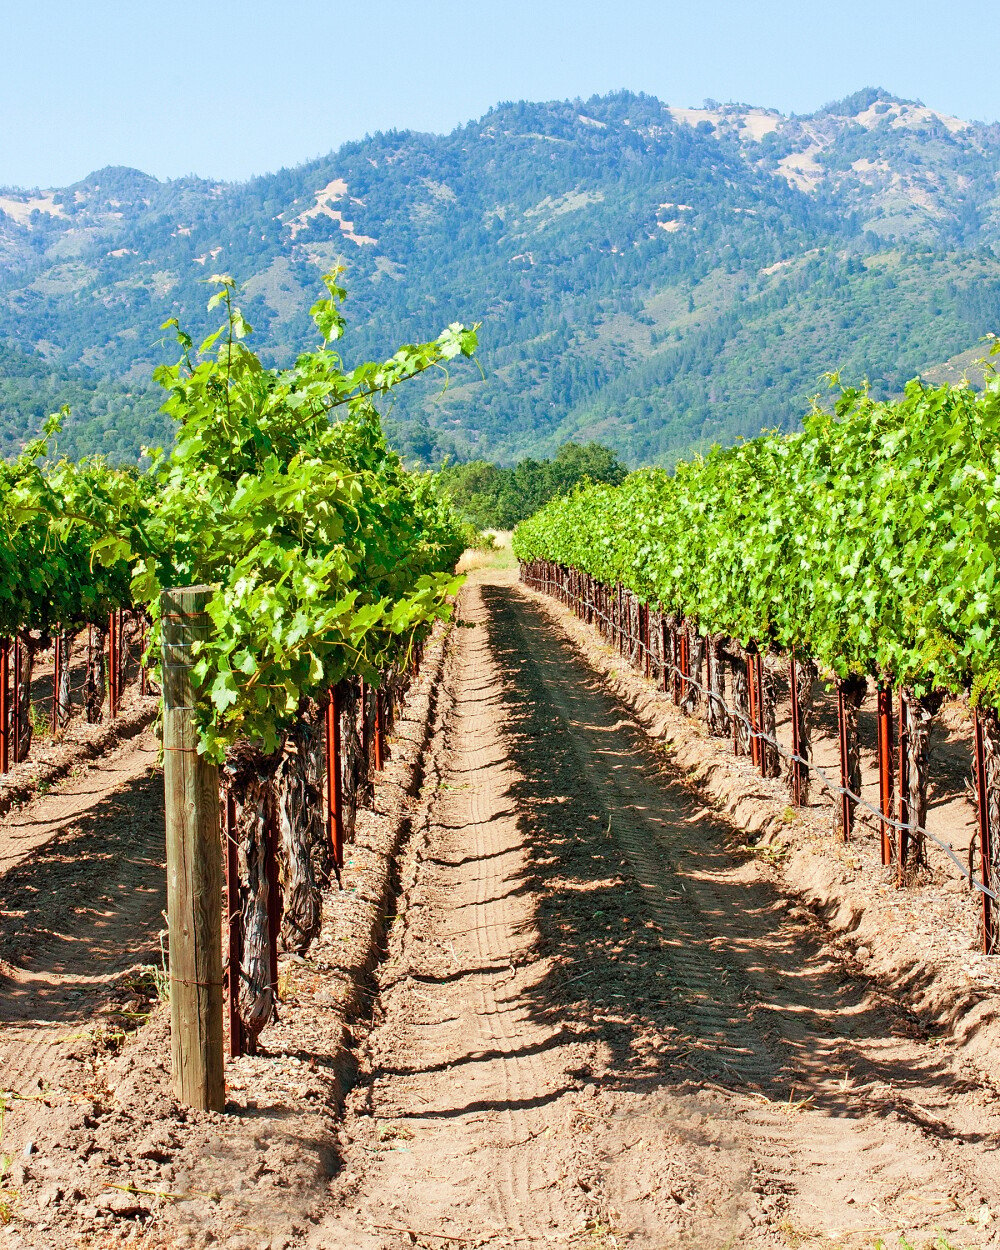 Napa Valley: The turbulent history of California's prestigious wine region